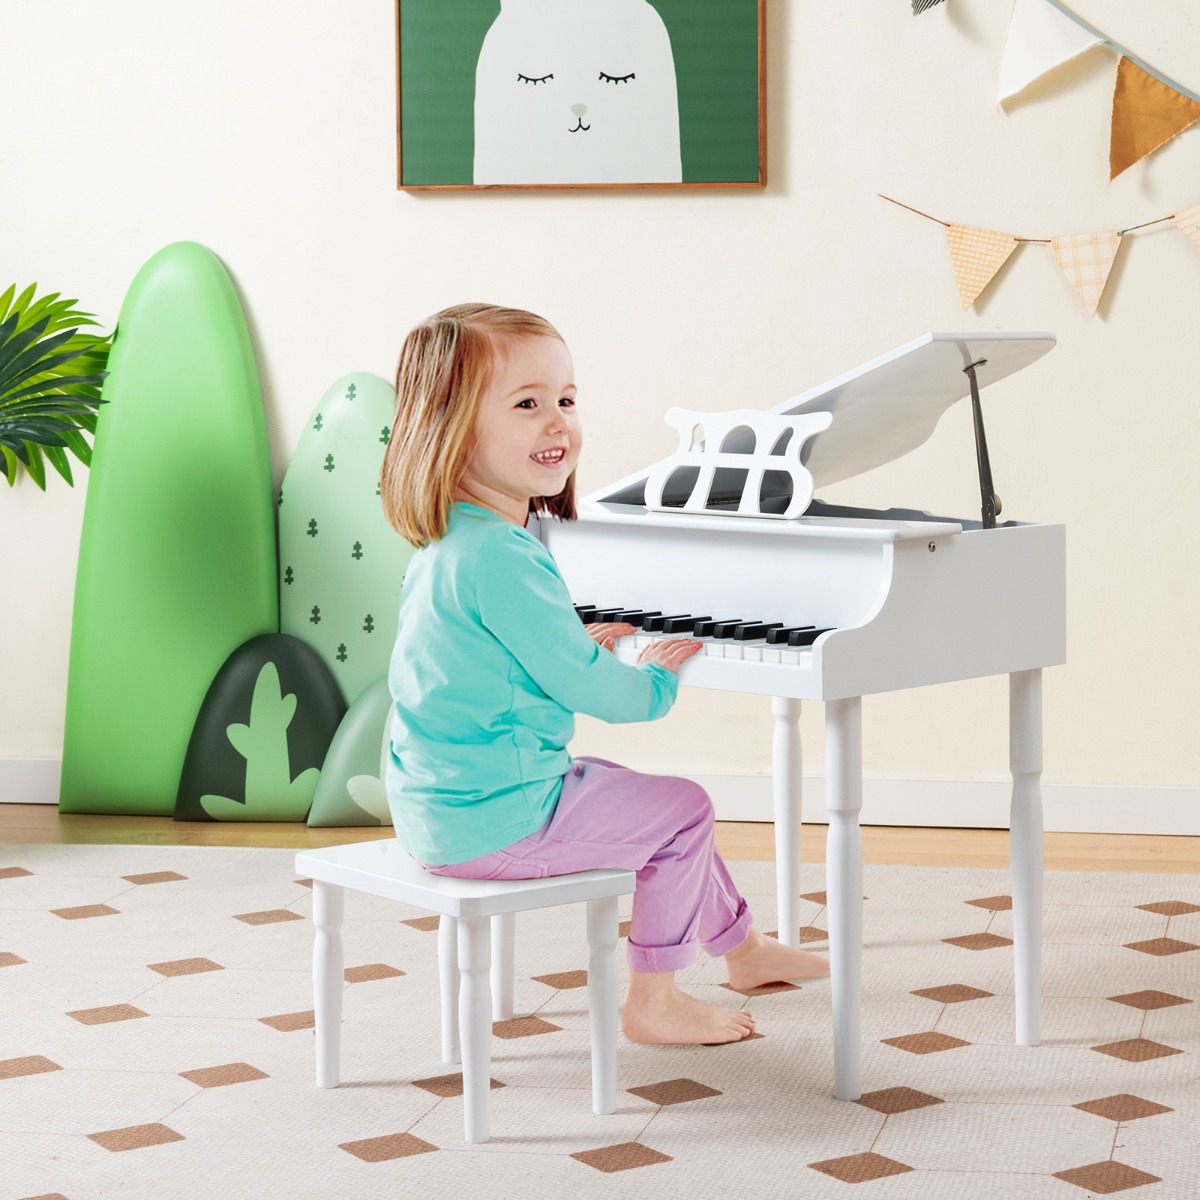 Brinquedo - Piano Infantil - Som de Animais - 30 Teclas - 28cm